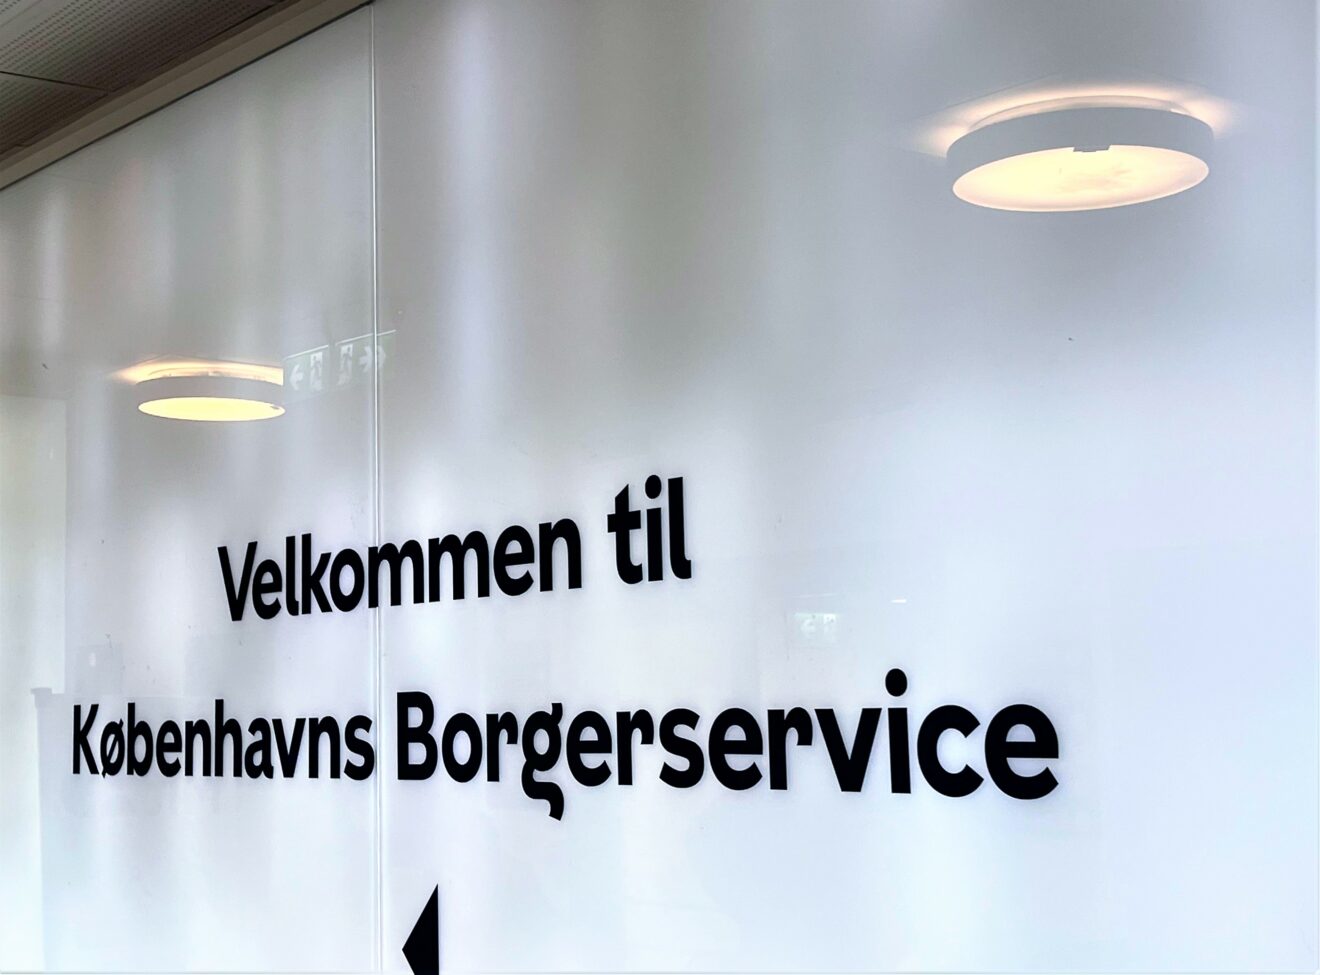 Danmarks største arbejdsplads fastholder god trivsel blandt medarbejdere